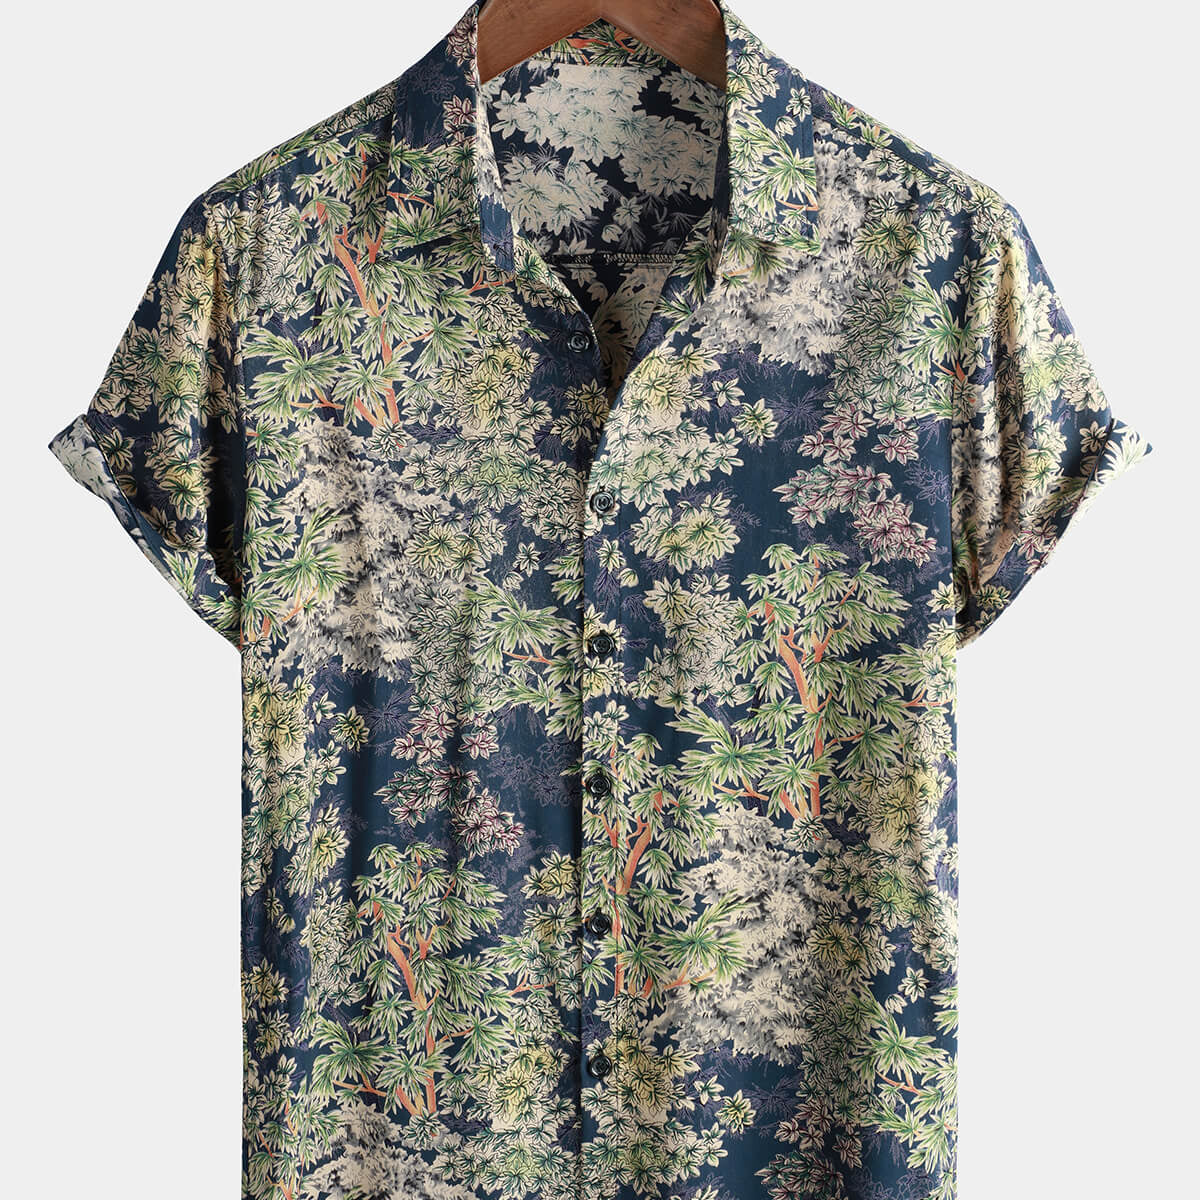 Men's Short Sleeve Holiday Button Beach Shirt